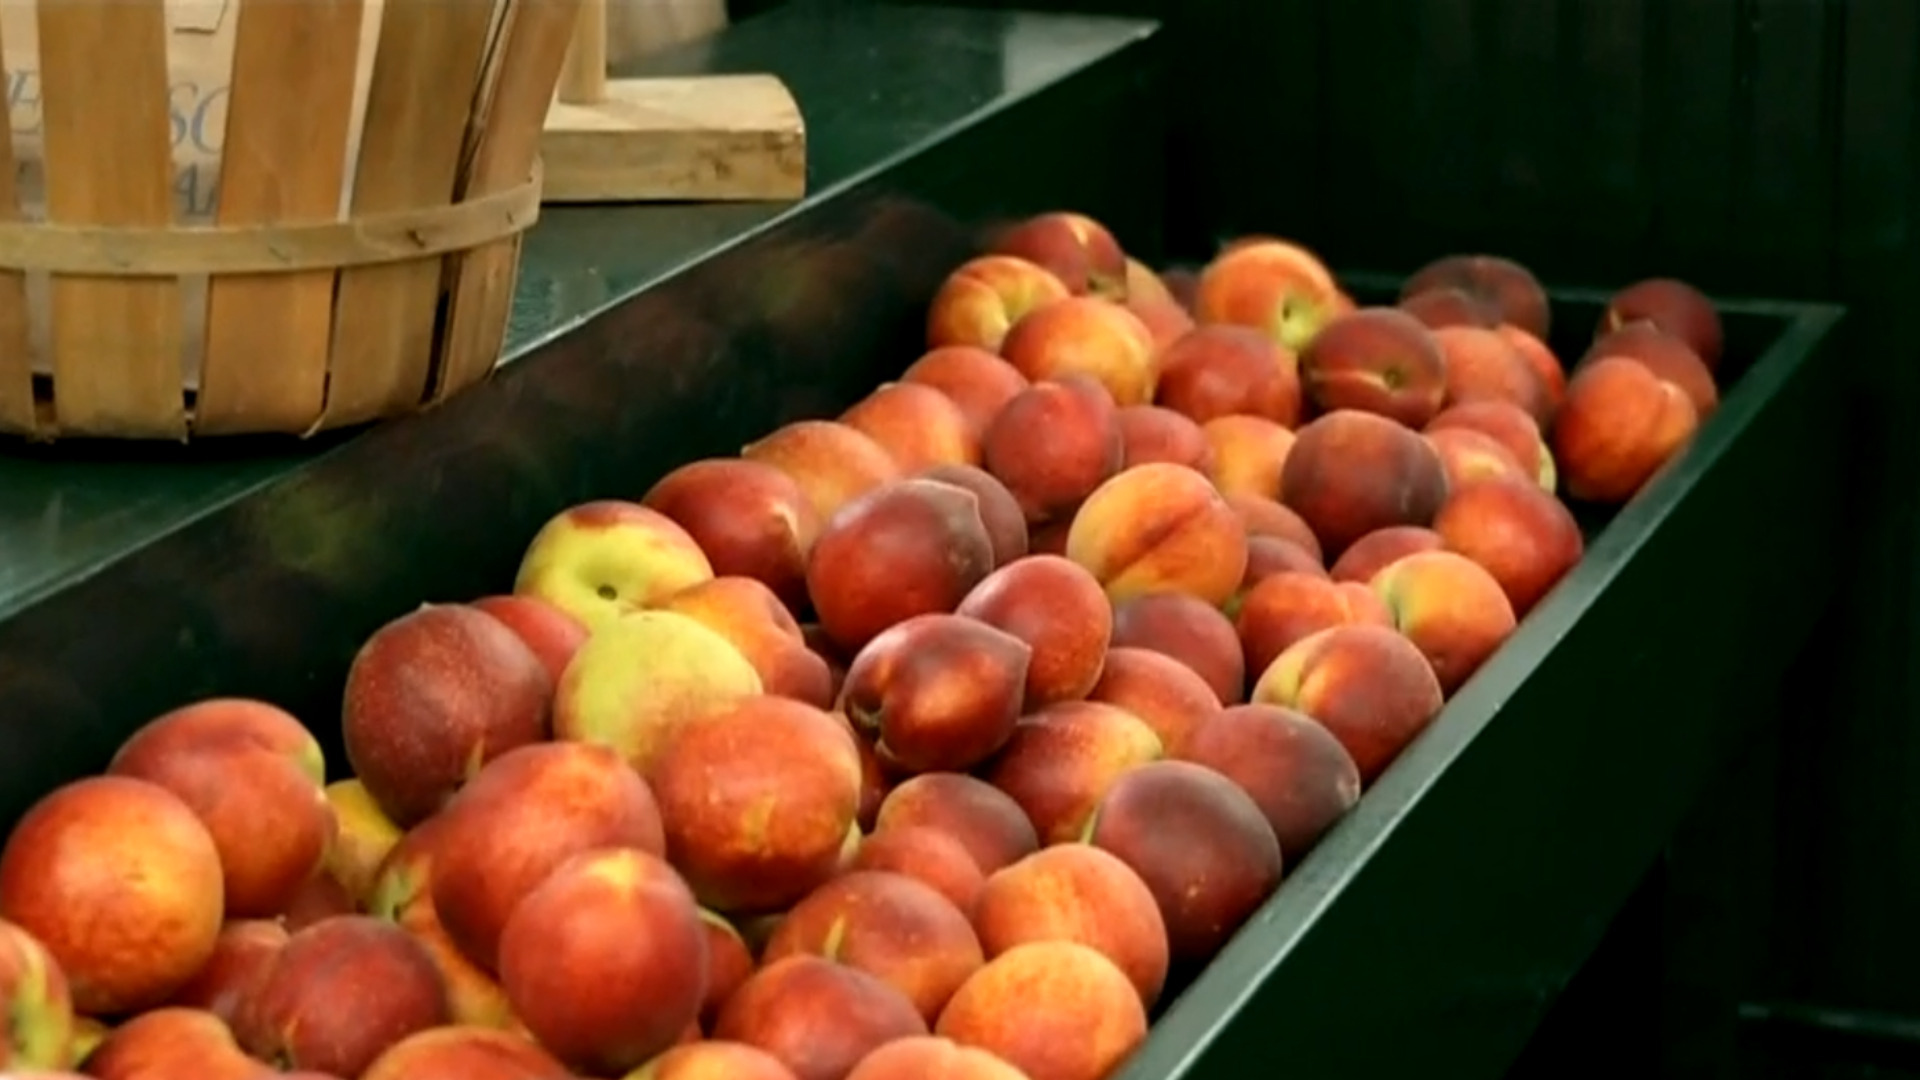 Watch CBS Evening News peach crop devastated by warm winter